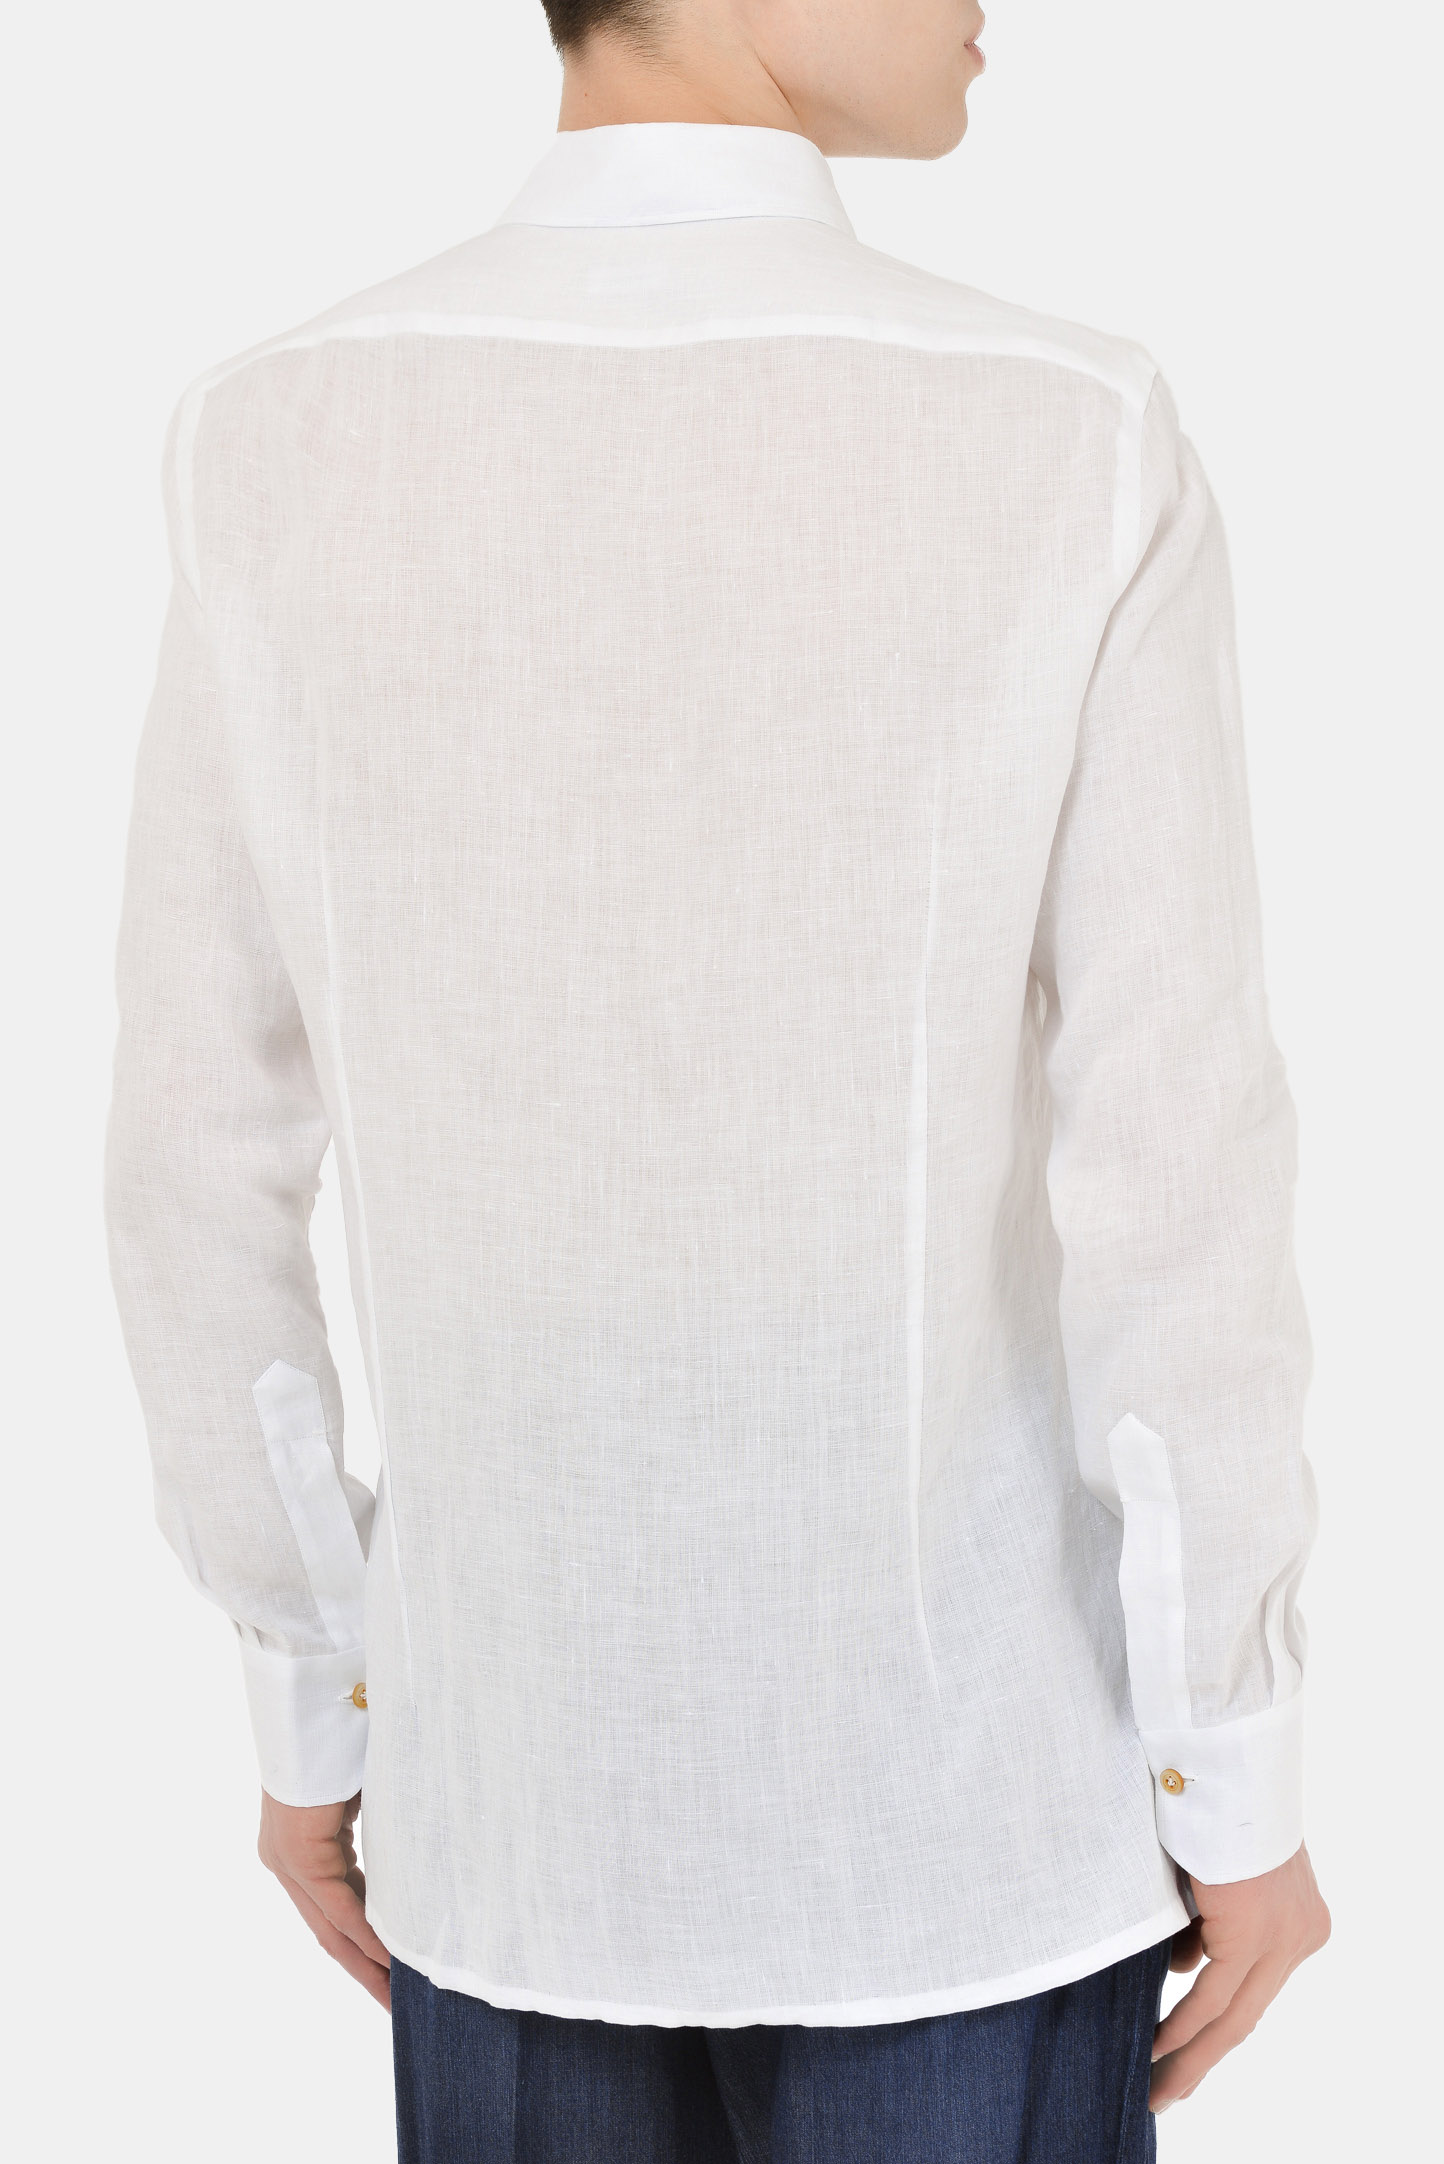 Рубашка KITON UMCNERH076860, цвет: Белый, Мужской